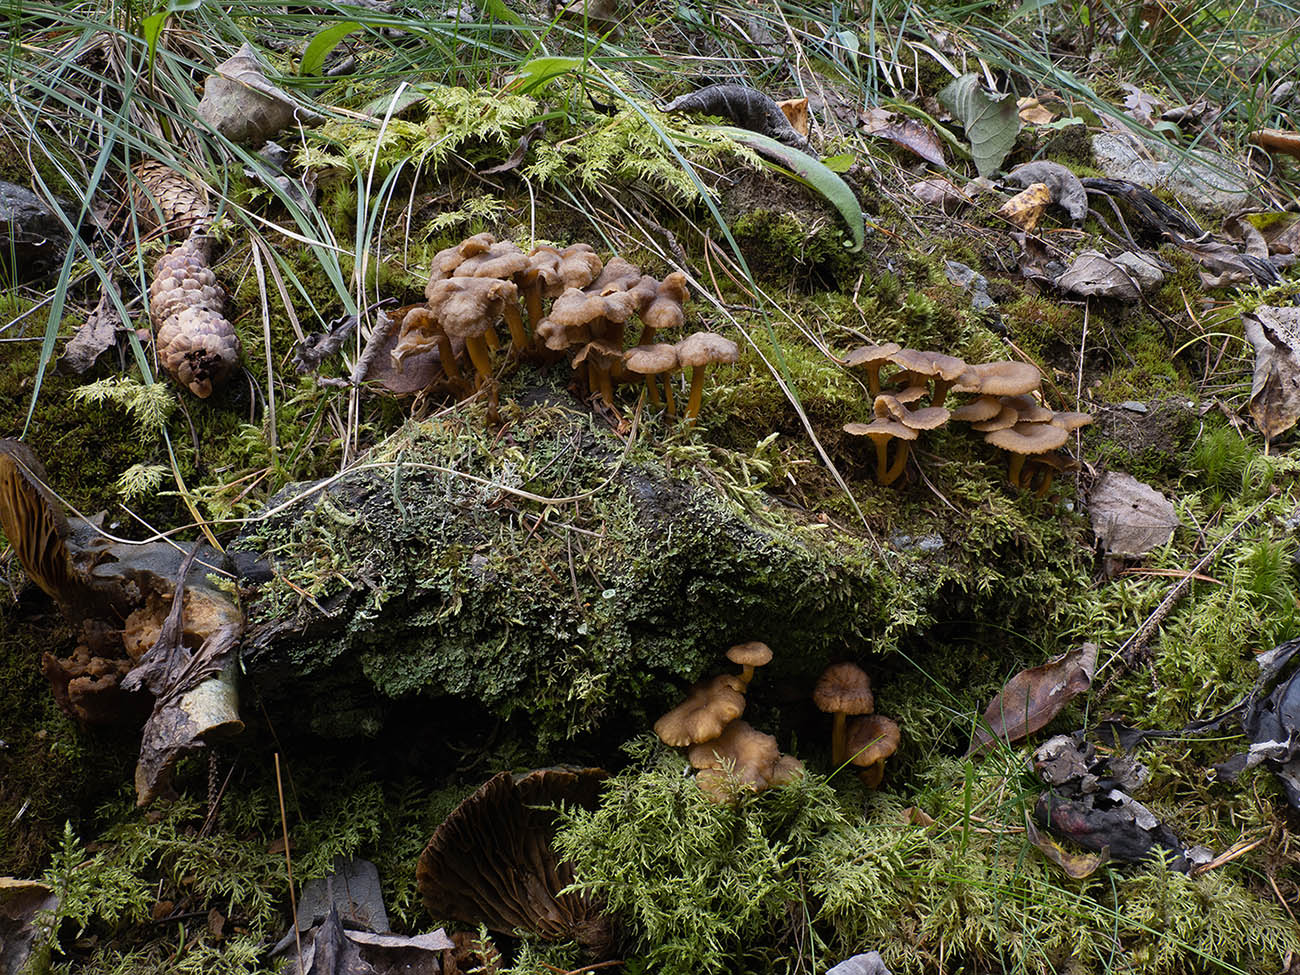 Лисичка трубчатая (Craterellus tubaeformis) в природном парке G?rv?ln, Стокгольм. Октябрь 2020 года. Автор фото: Сутормина Марина